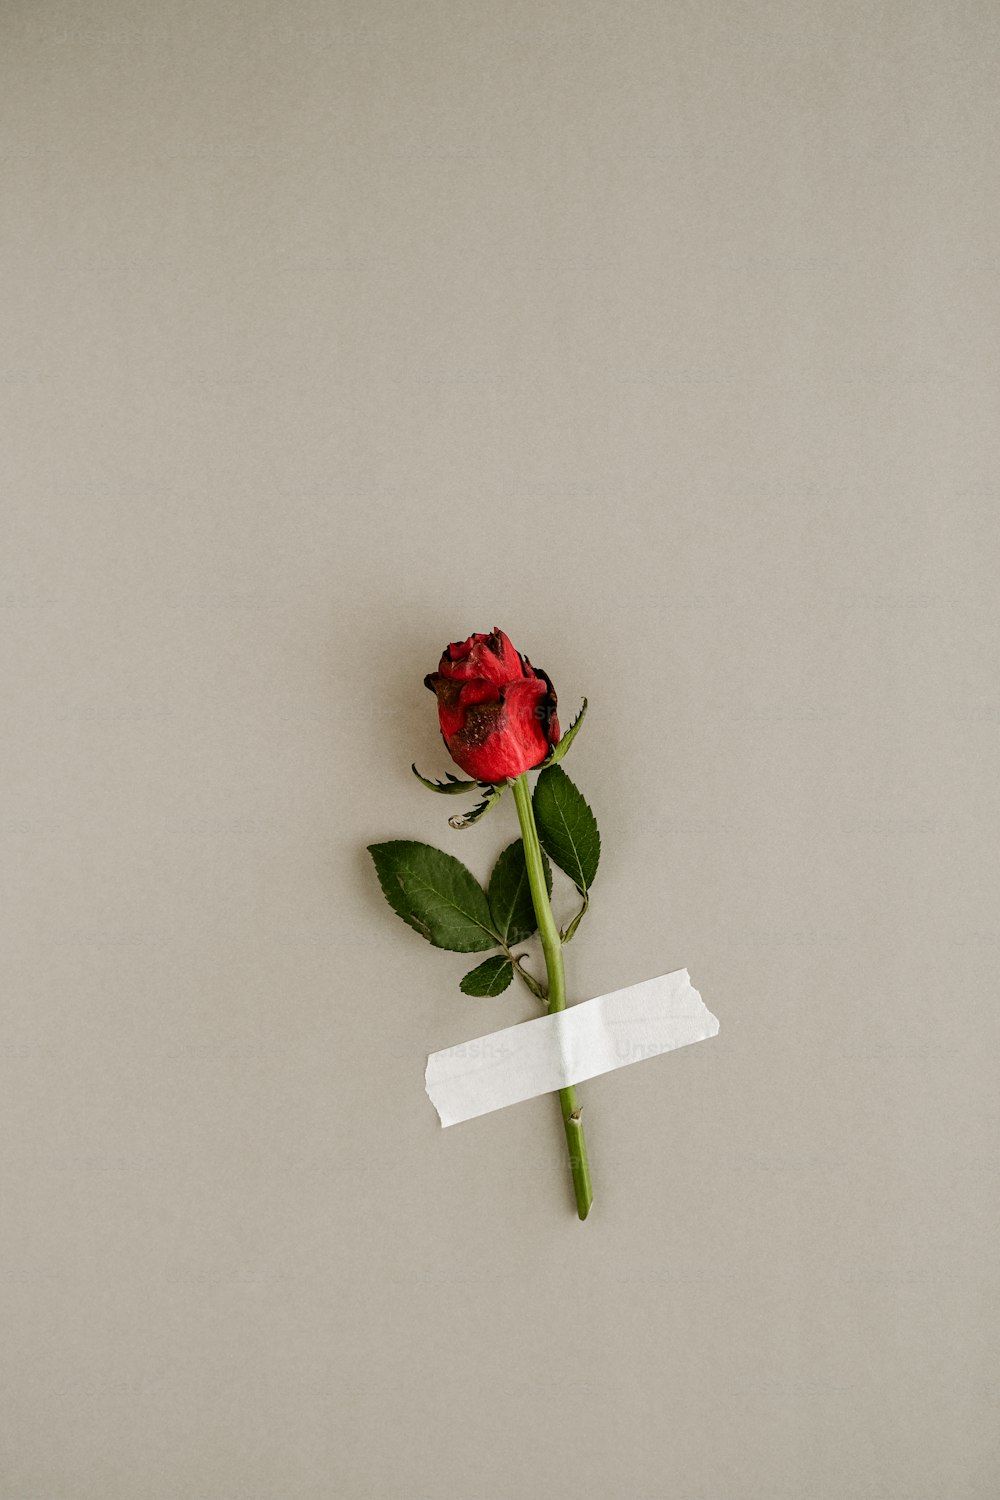 一枚の赤いバラに一枚の紙がテープで貼られている